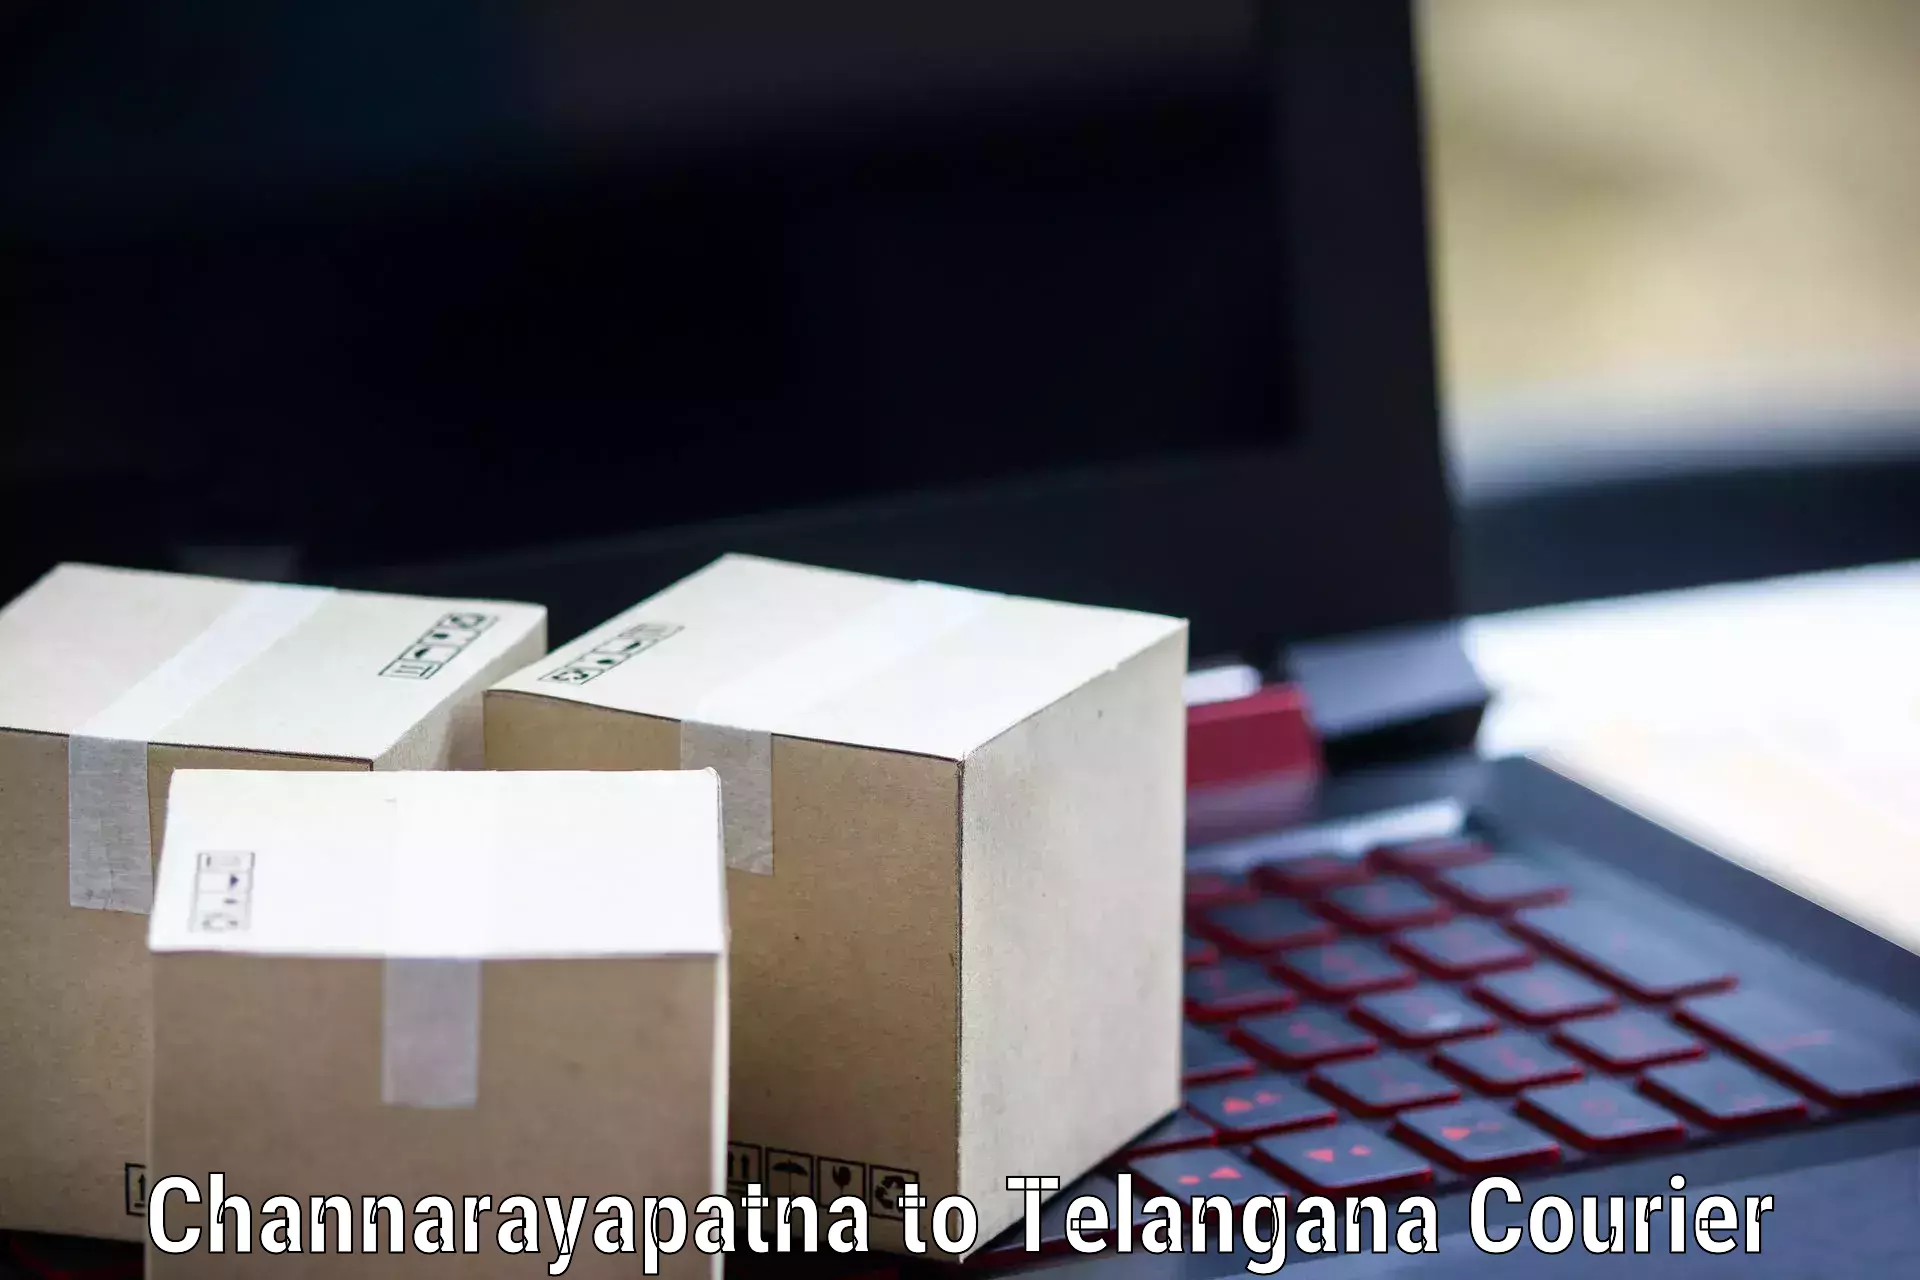 Customer-centric shipping Channarayapatna to Yellandu